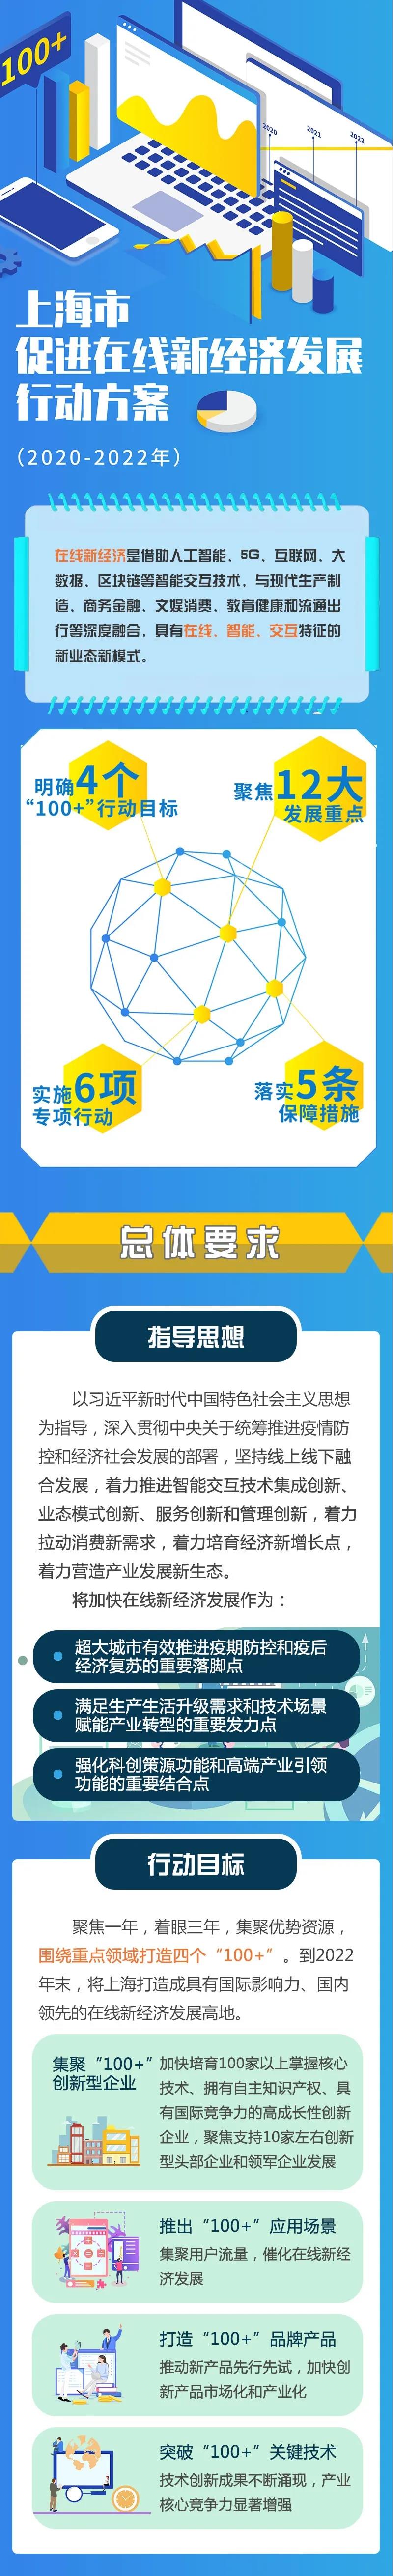 上海市促进在线新经济发展行动方案发布-中国网地产